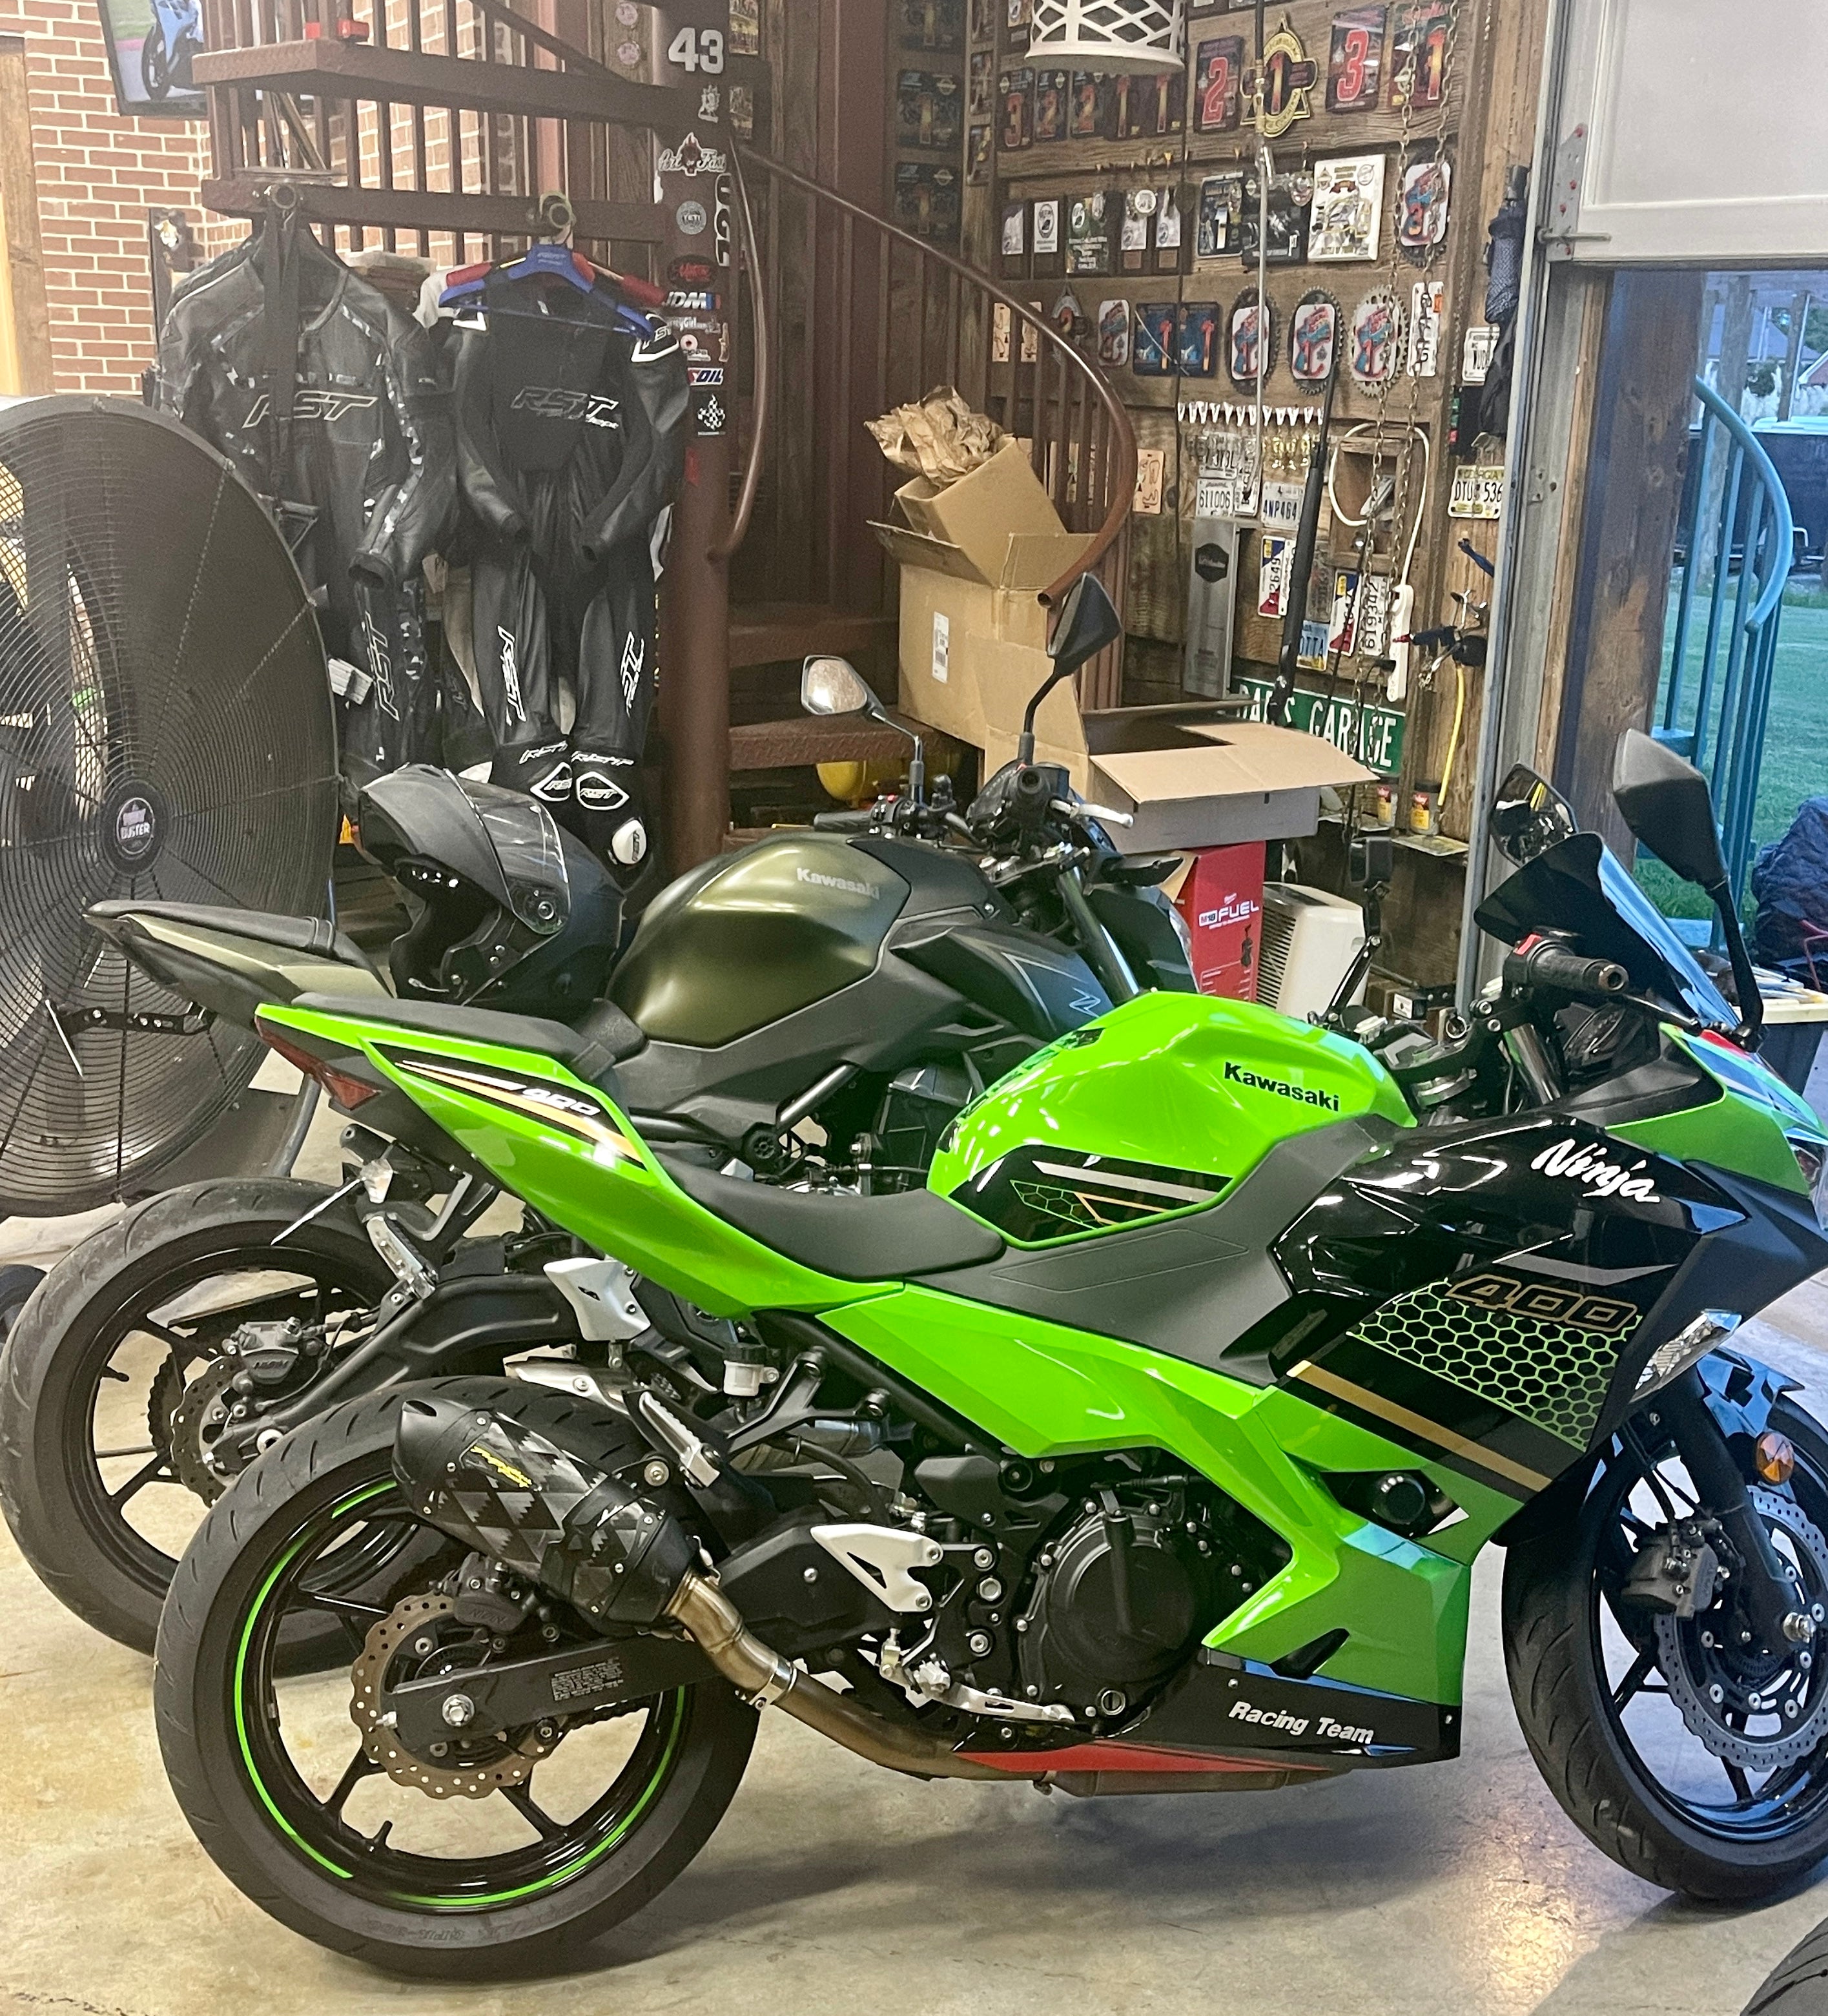 New 2022 Kawasaki Ninja 400 ABS Motorcycles in Greenville NC  Stock  Number NA